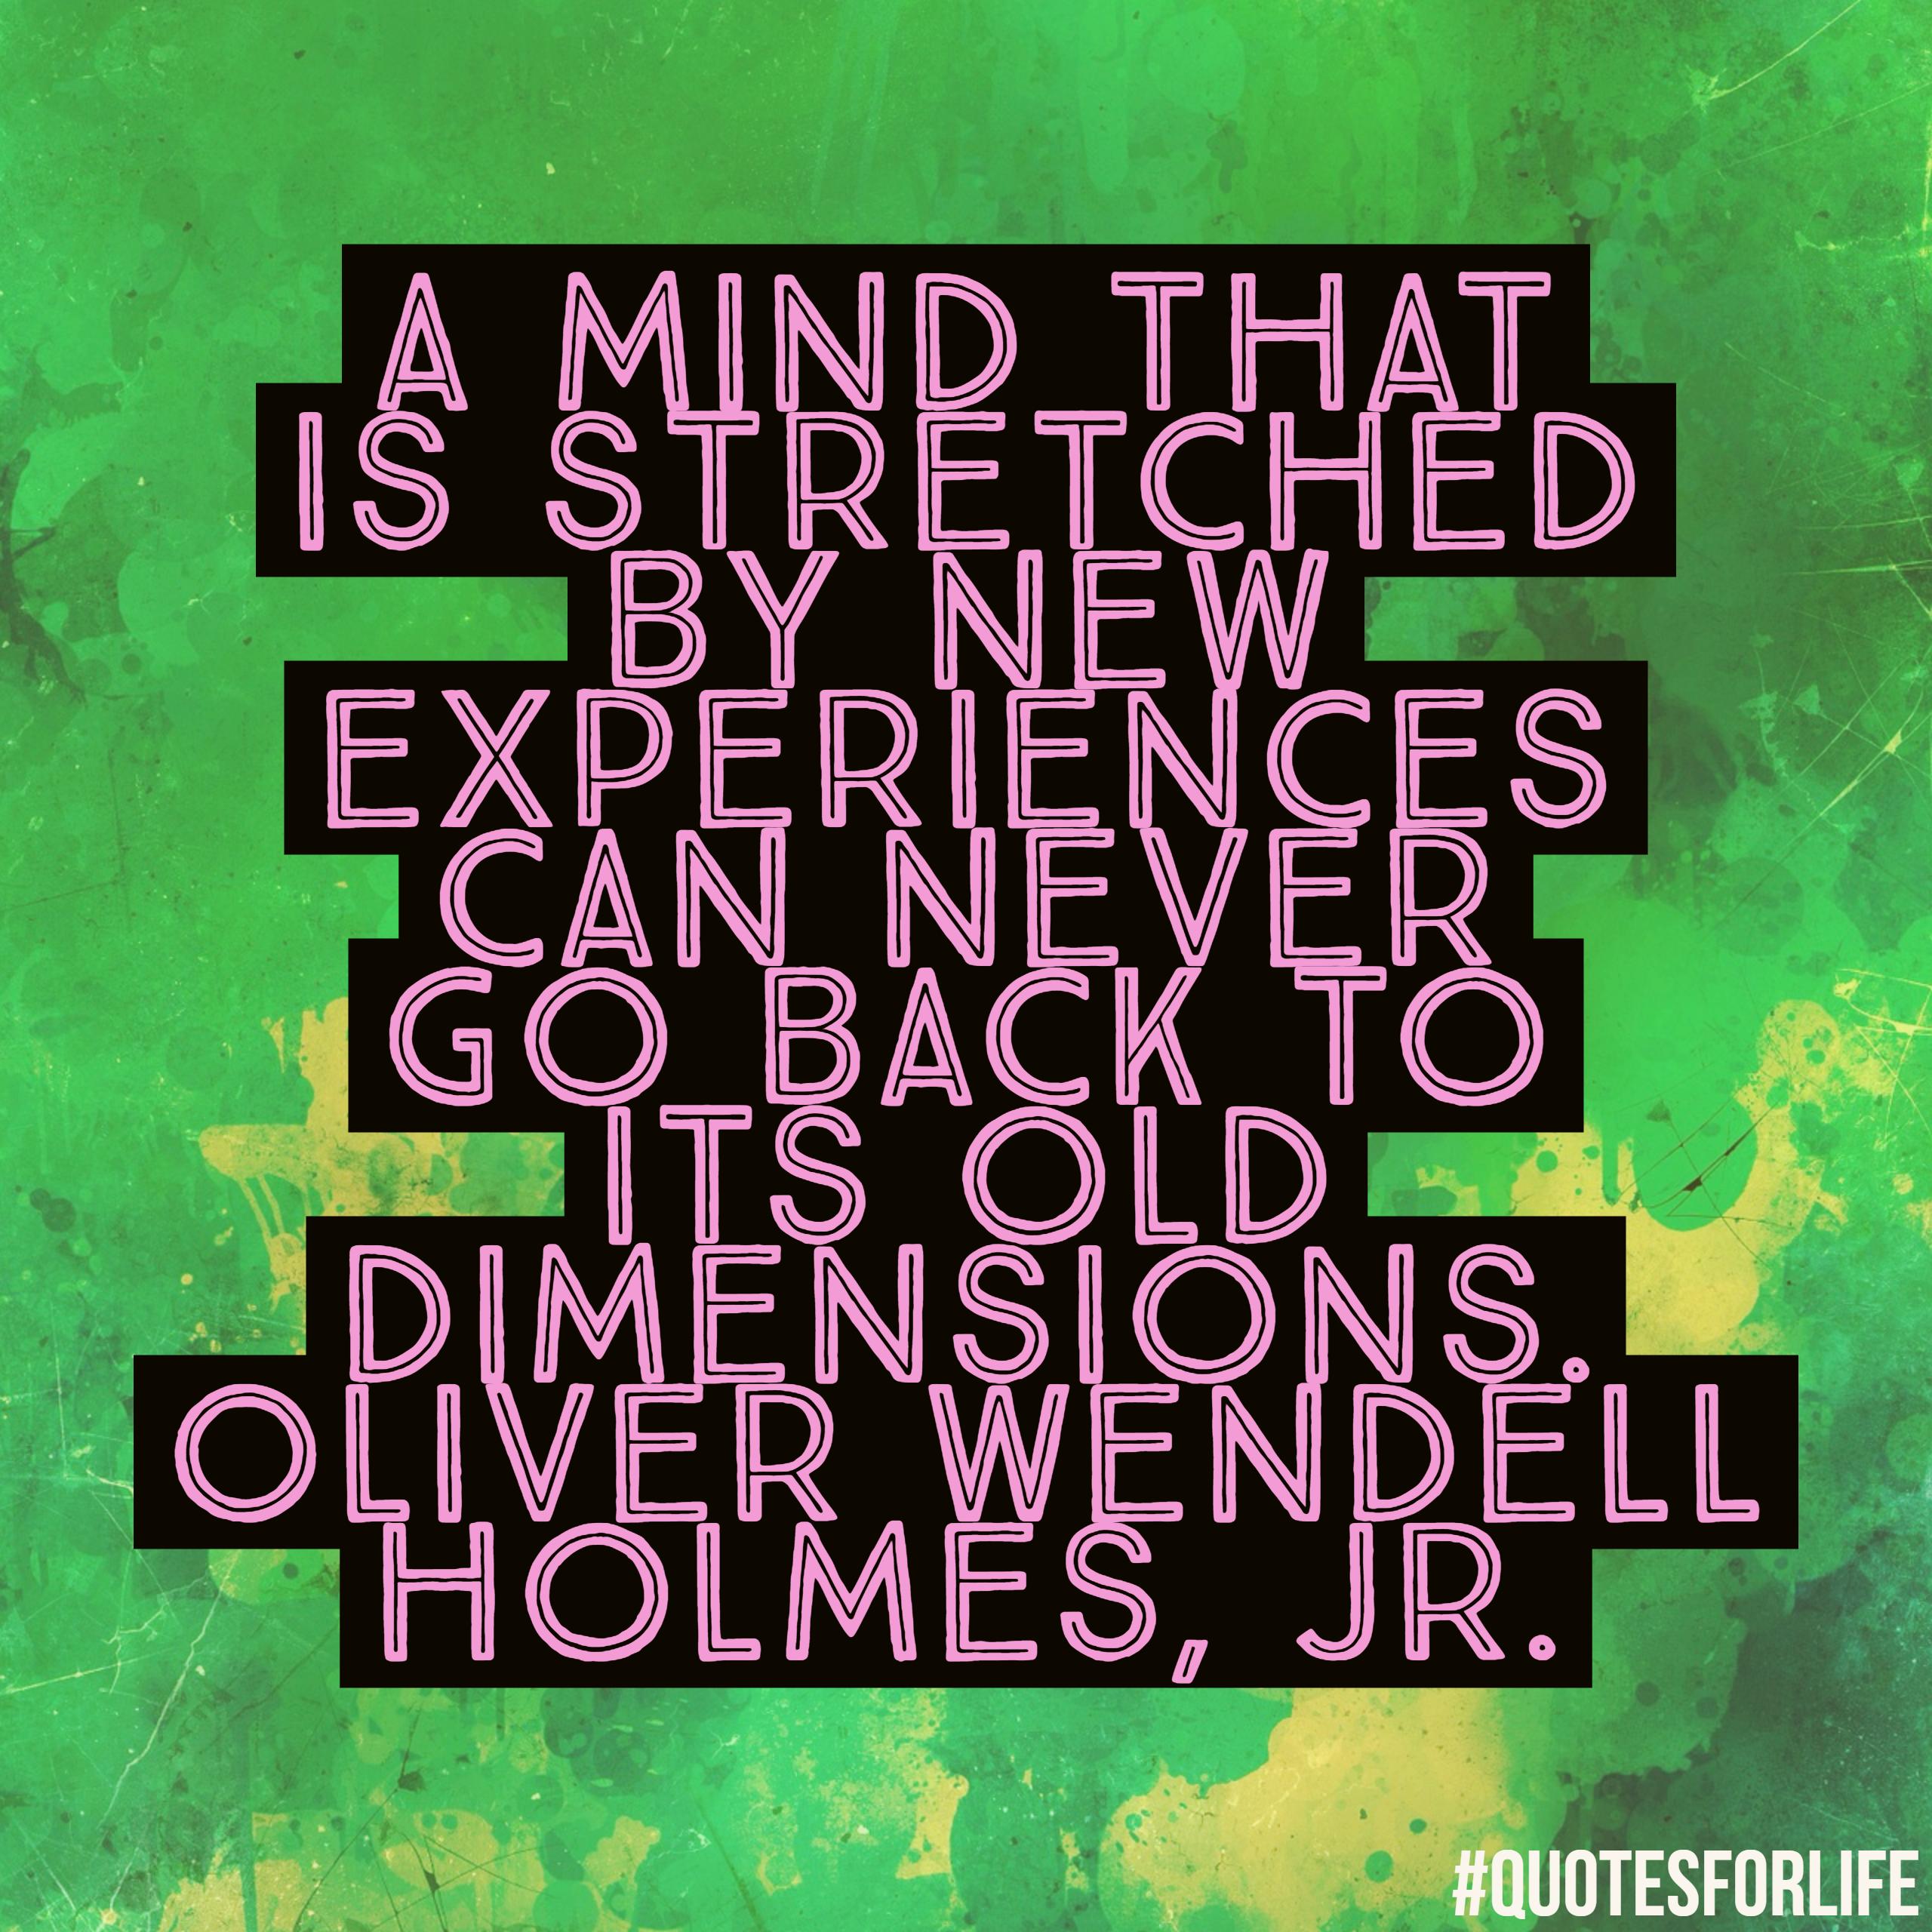 Oliver Wendell Holmes, Jr.